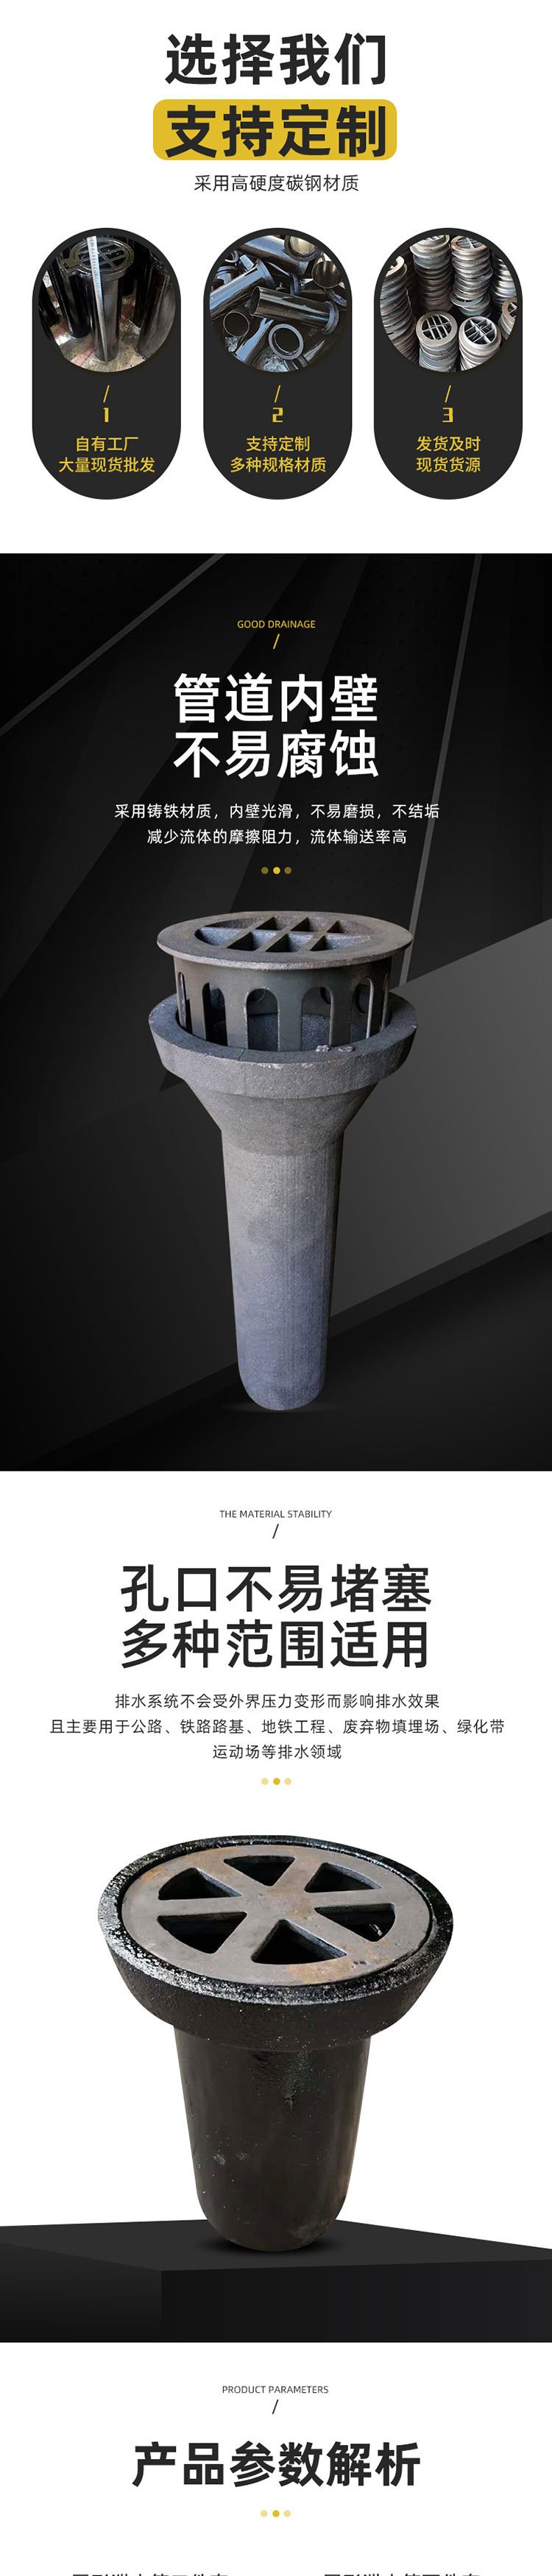 内蒙古呼伦贝尔市160圆形泄水管来电优惠